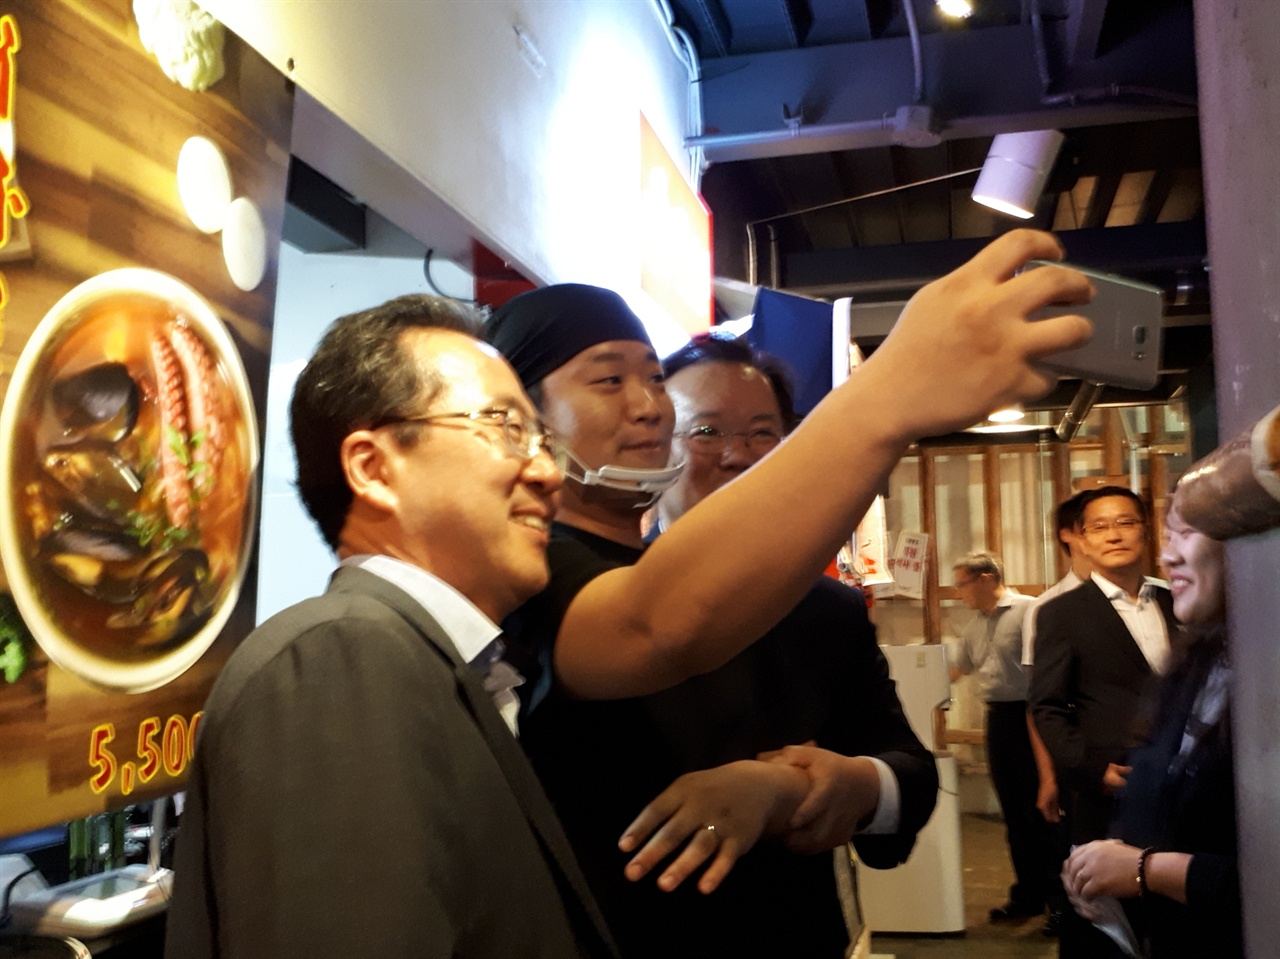 7월 20일 청춘창고에 입점한 청년 사업가의 제안으로 김부겸 장관과 허석 순천시장이 함께 셀카 촬영을 하며 환하게 웃고 있다. 